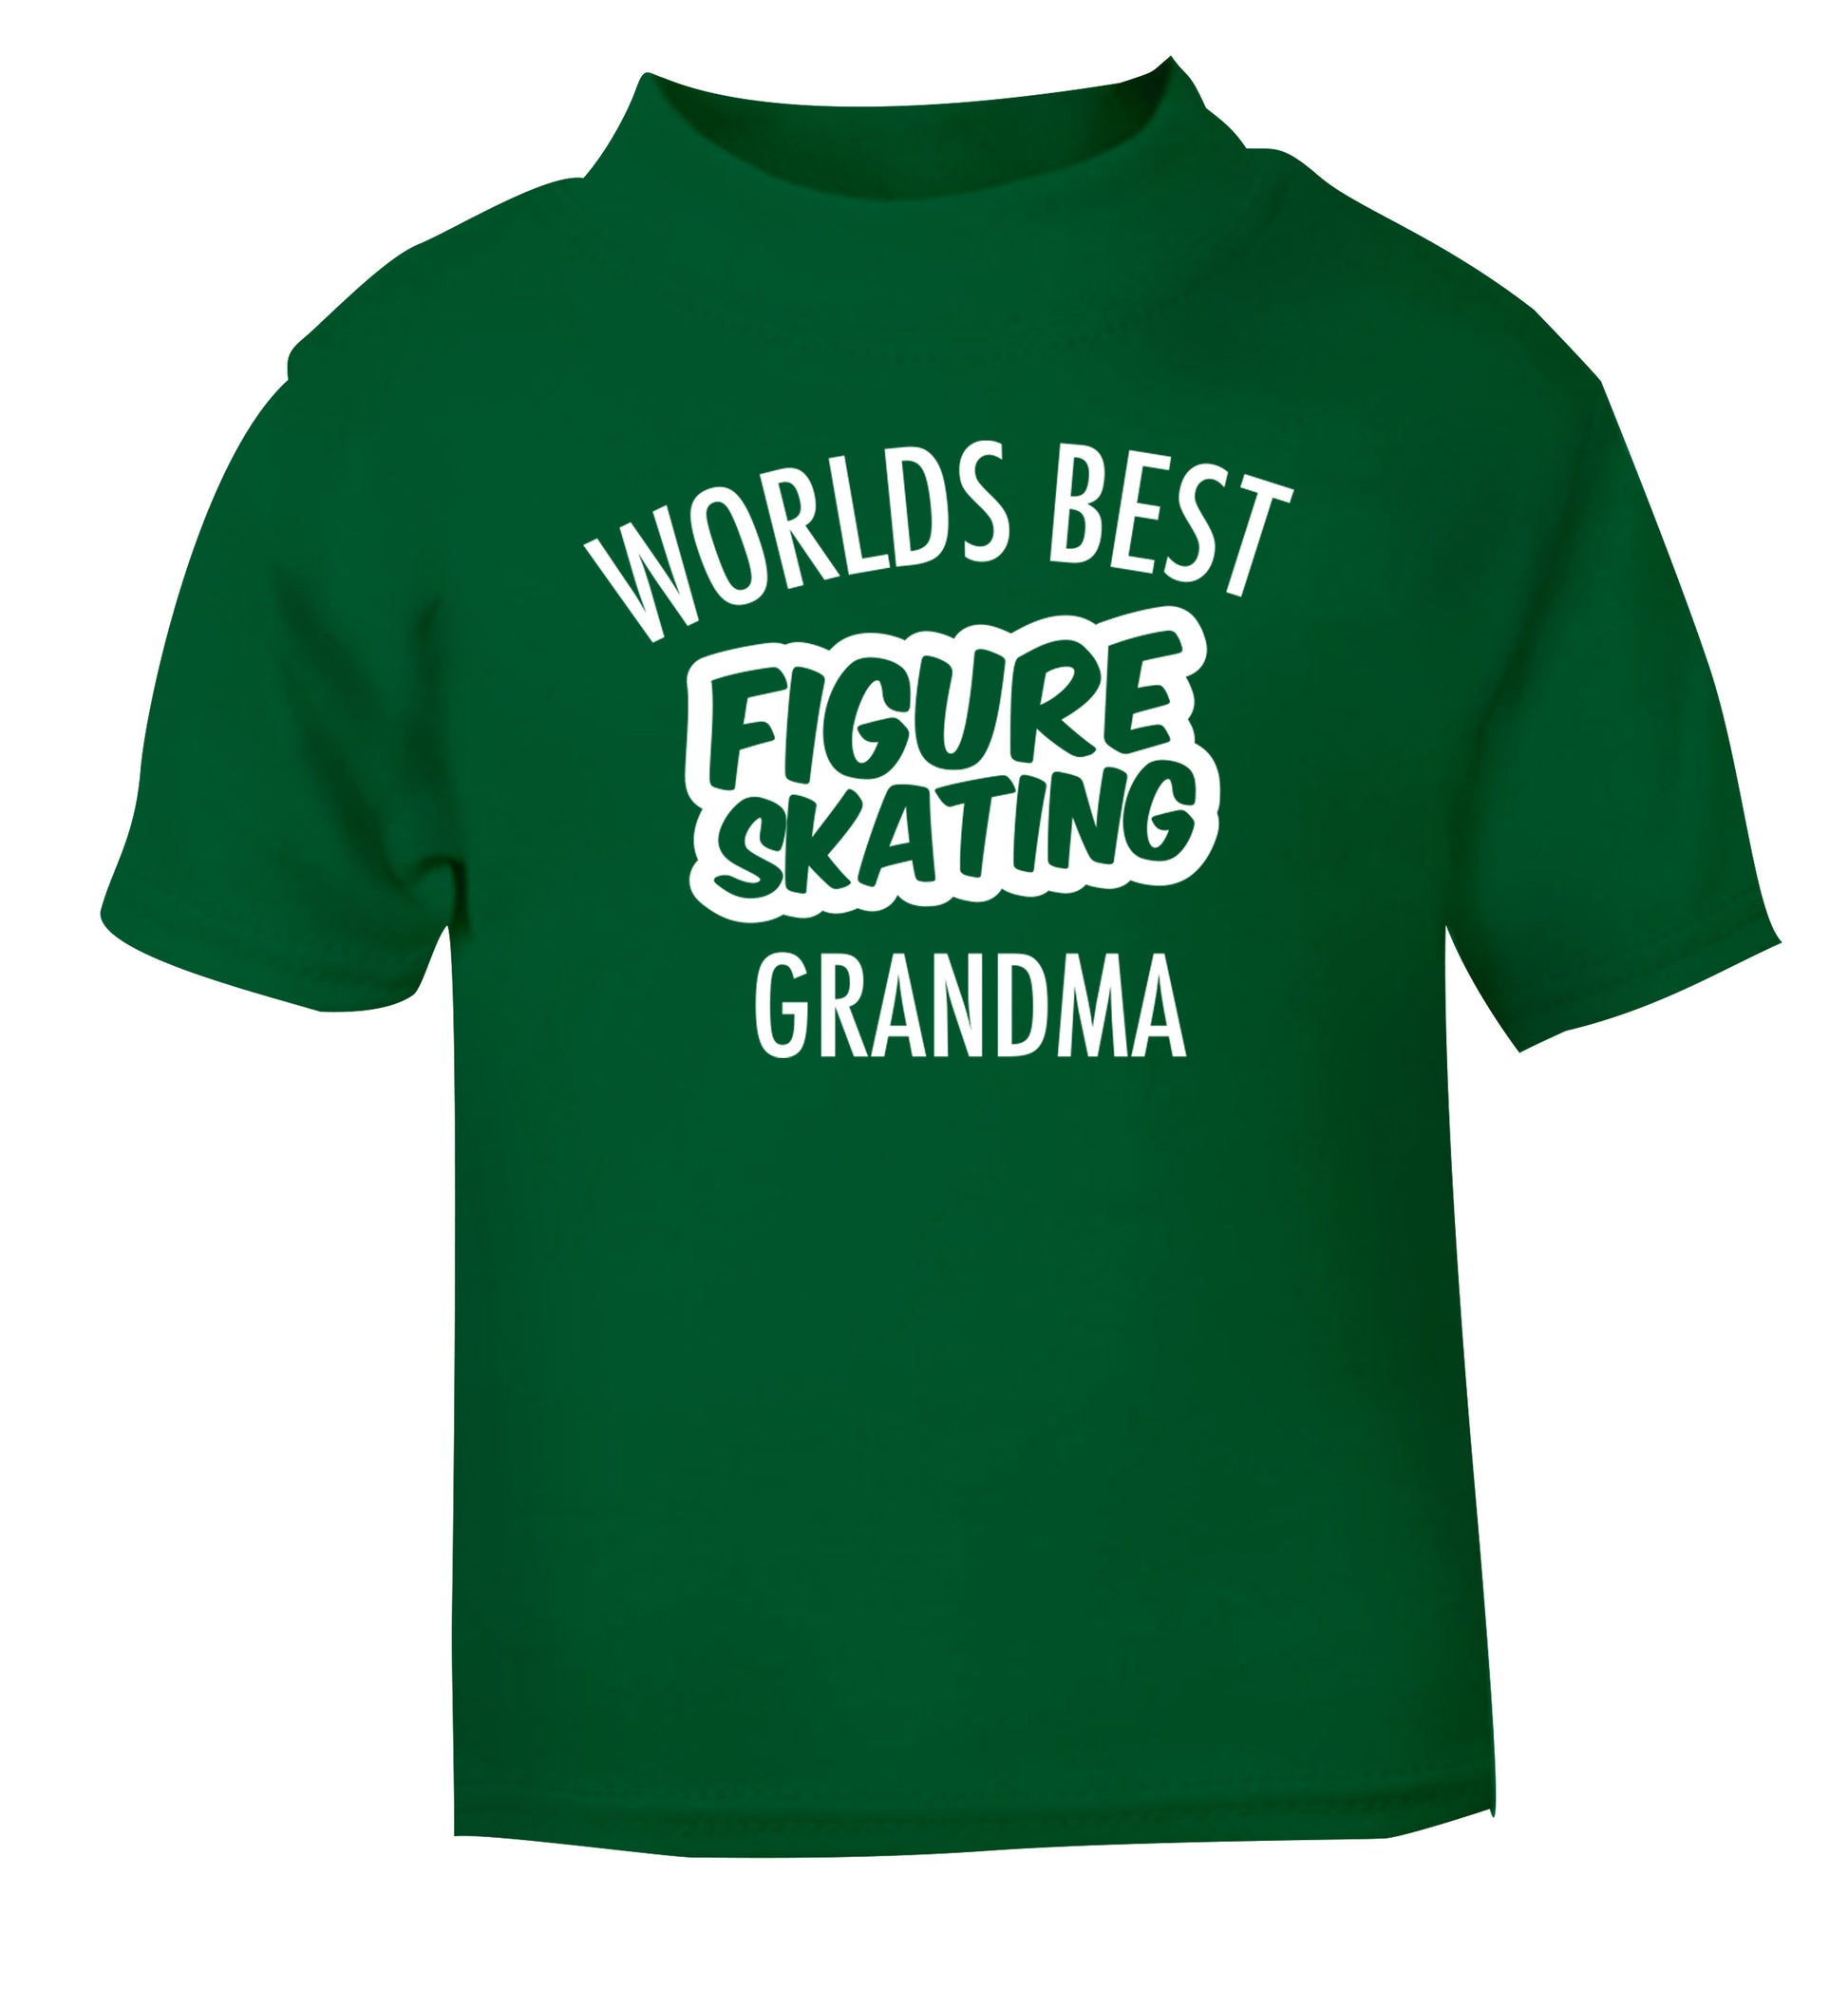 Worlds best figure skating grandma green Baby Toddler Tshirt 2 Years